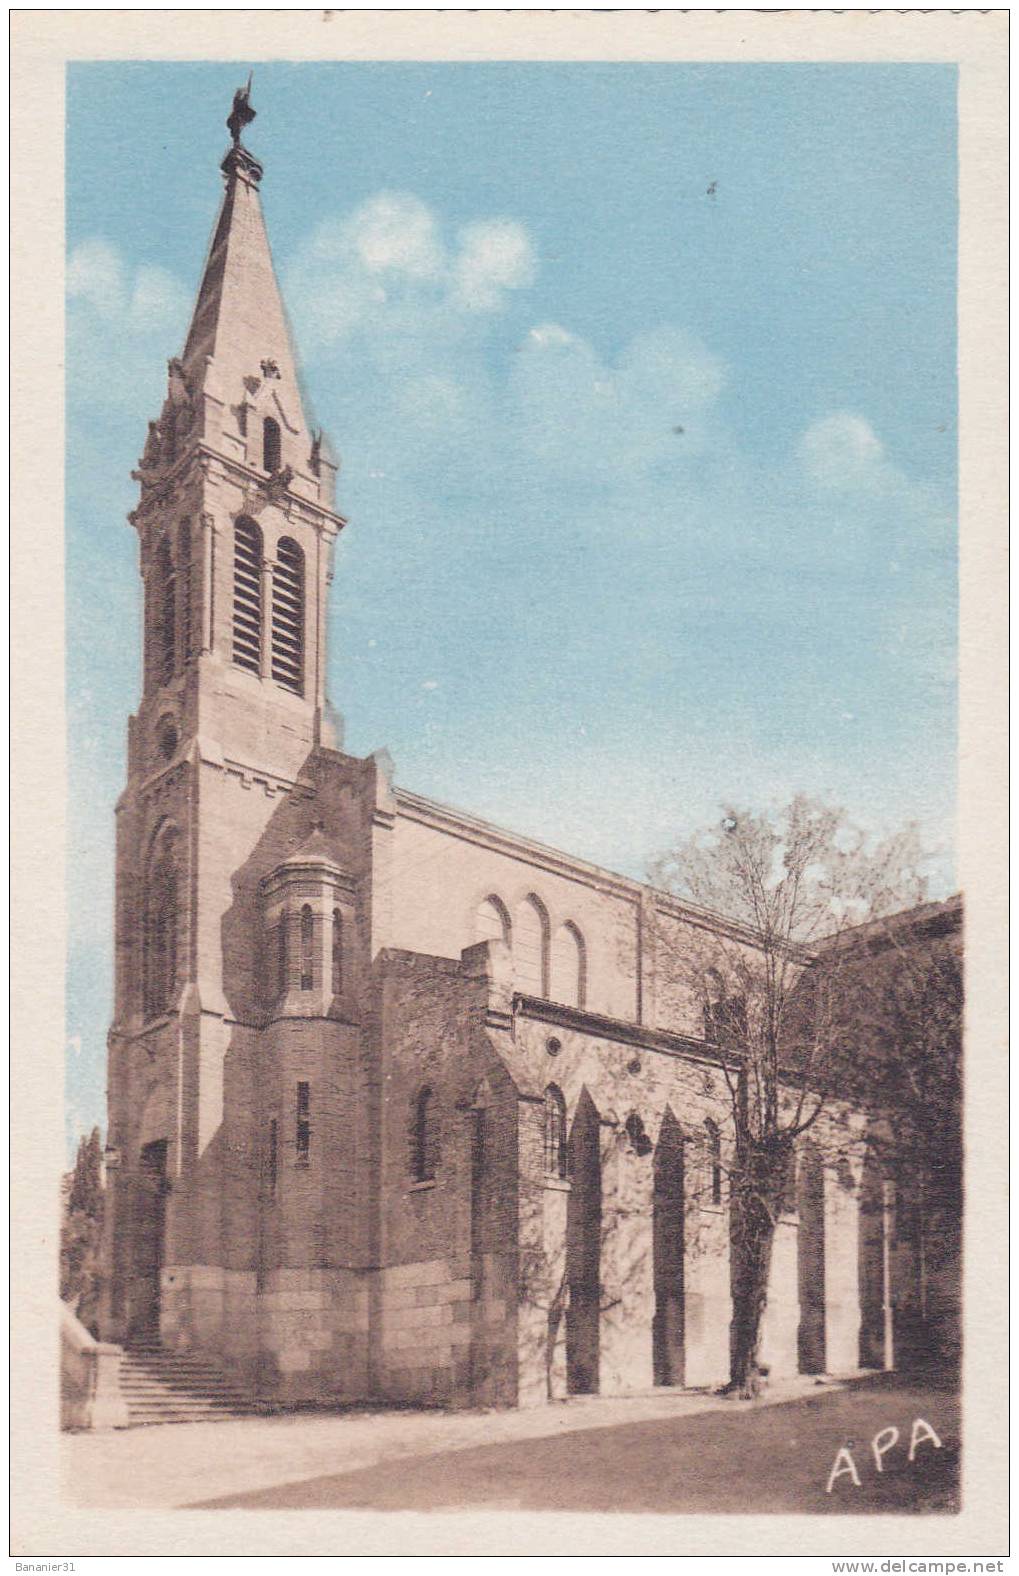 DPT 82 @ CPSM Vers 1945 -1950 @ MONCLAR DE QUERCY  @ L' Eglise @ - Montclar De Quercy